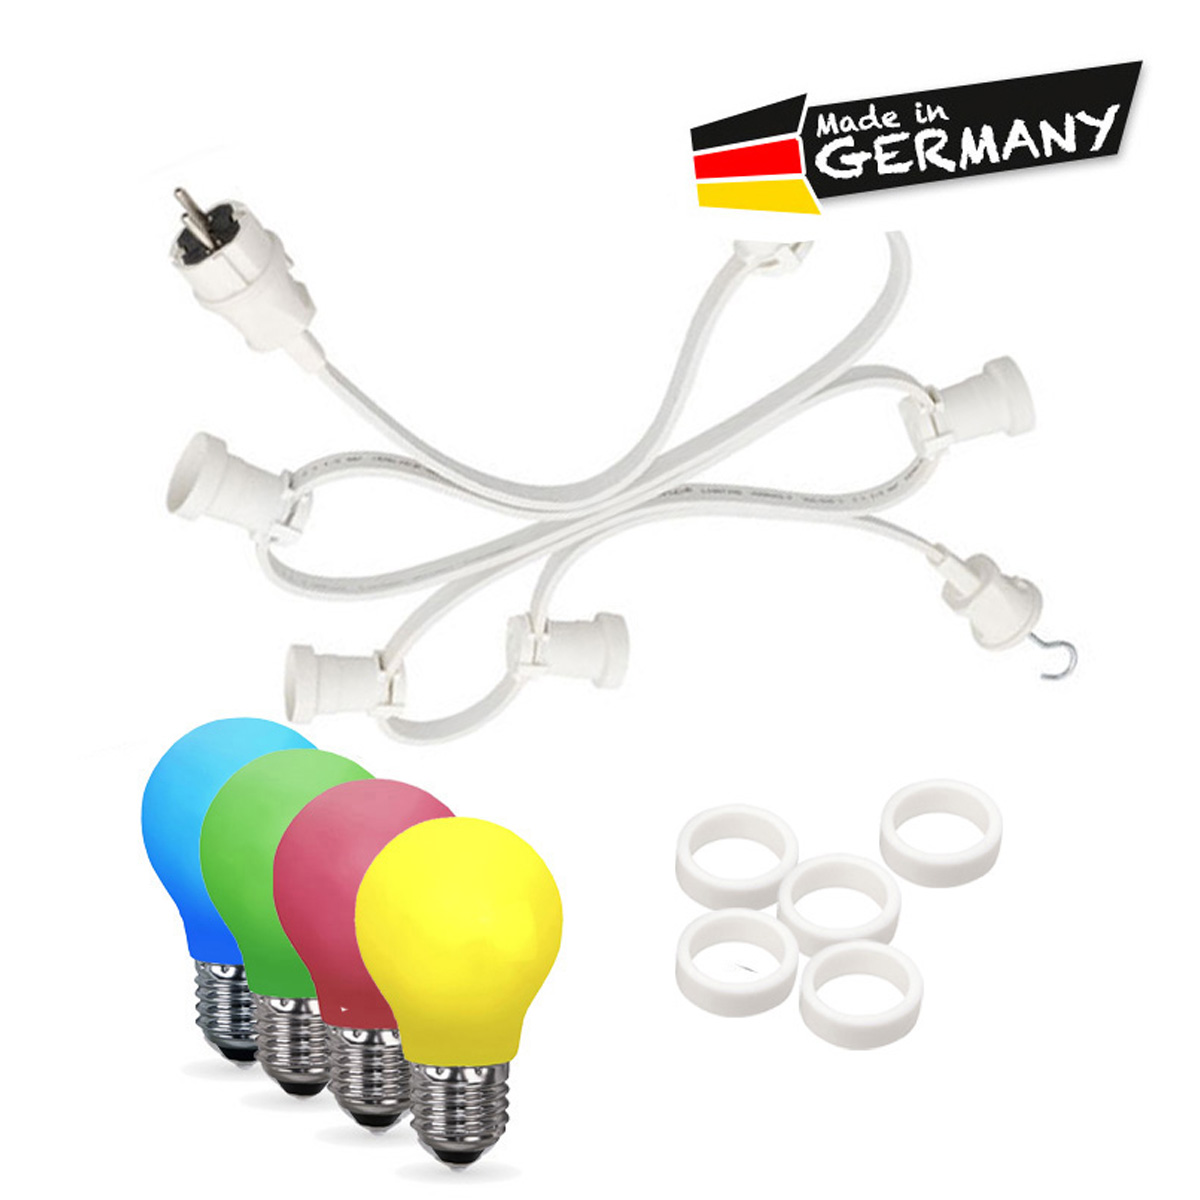 Illu-/Partylichterkette 20m | Außenlichterkette weiß | Made in Germany | 40 x bunte LED Tropfenlampe